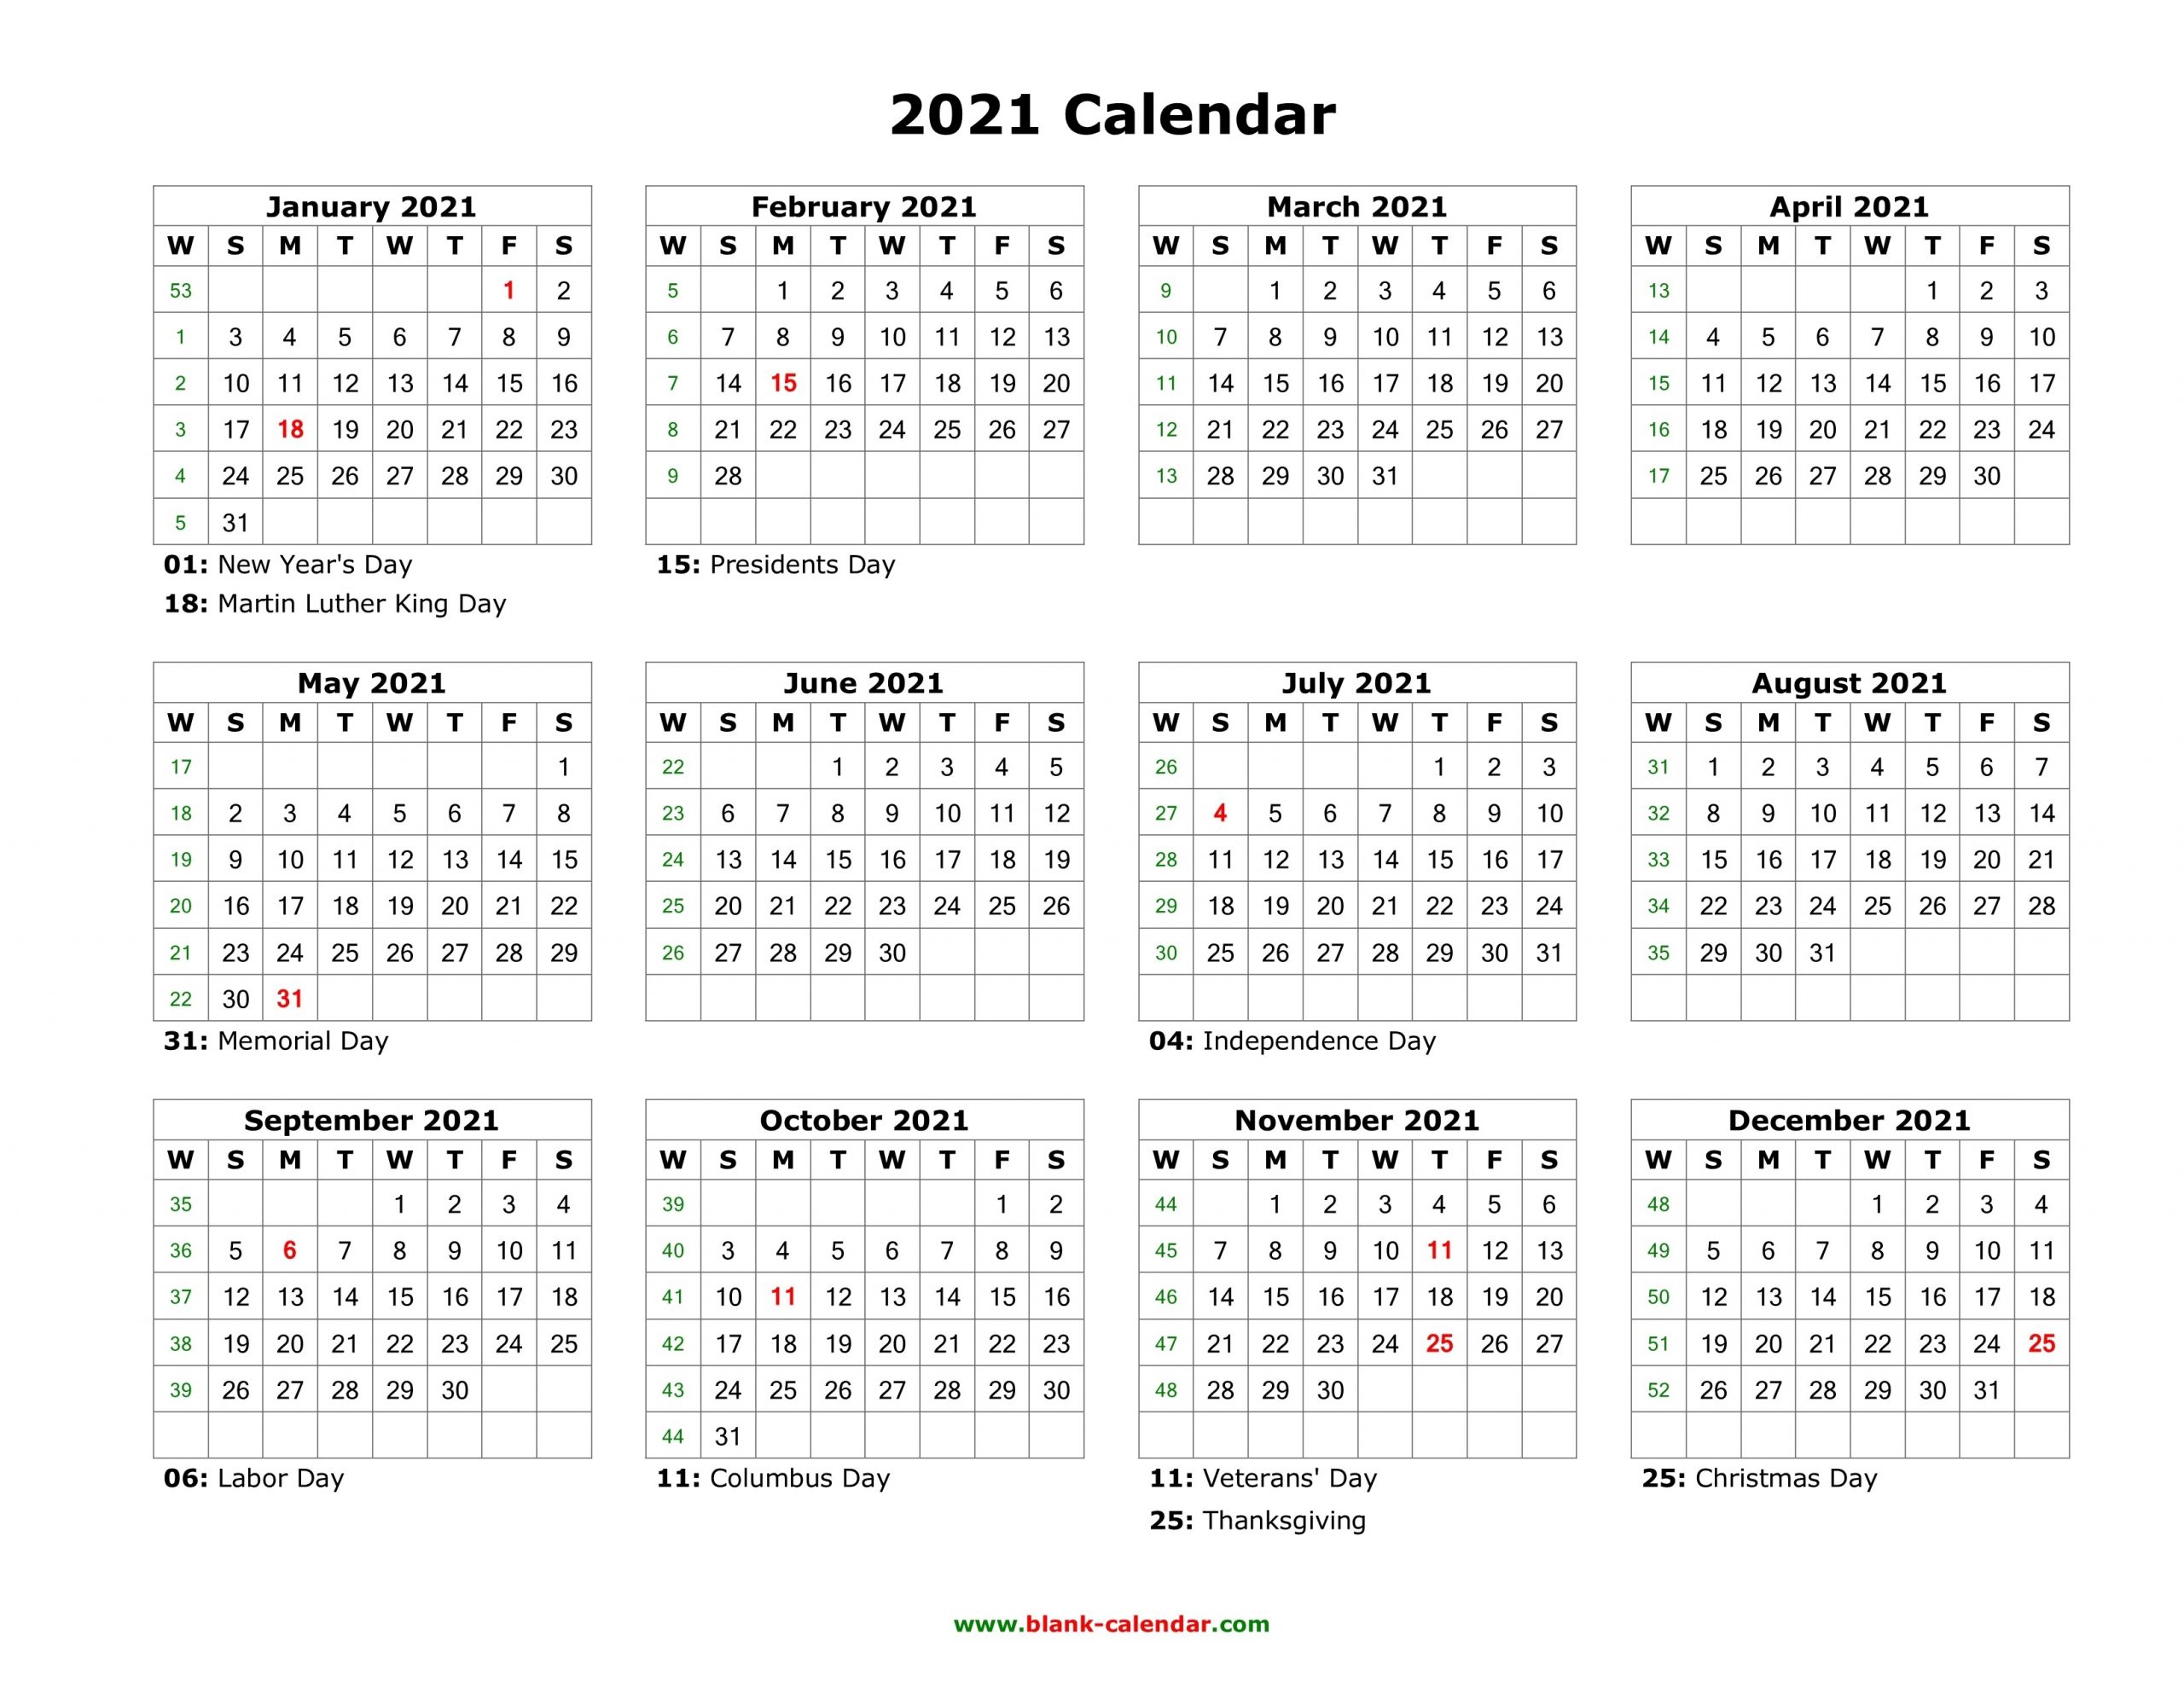 Blank Calendar 2021 | Free Download Calendar Templates-2021 Three Month Word Calendar Template